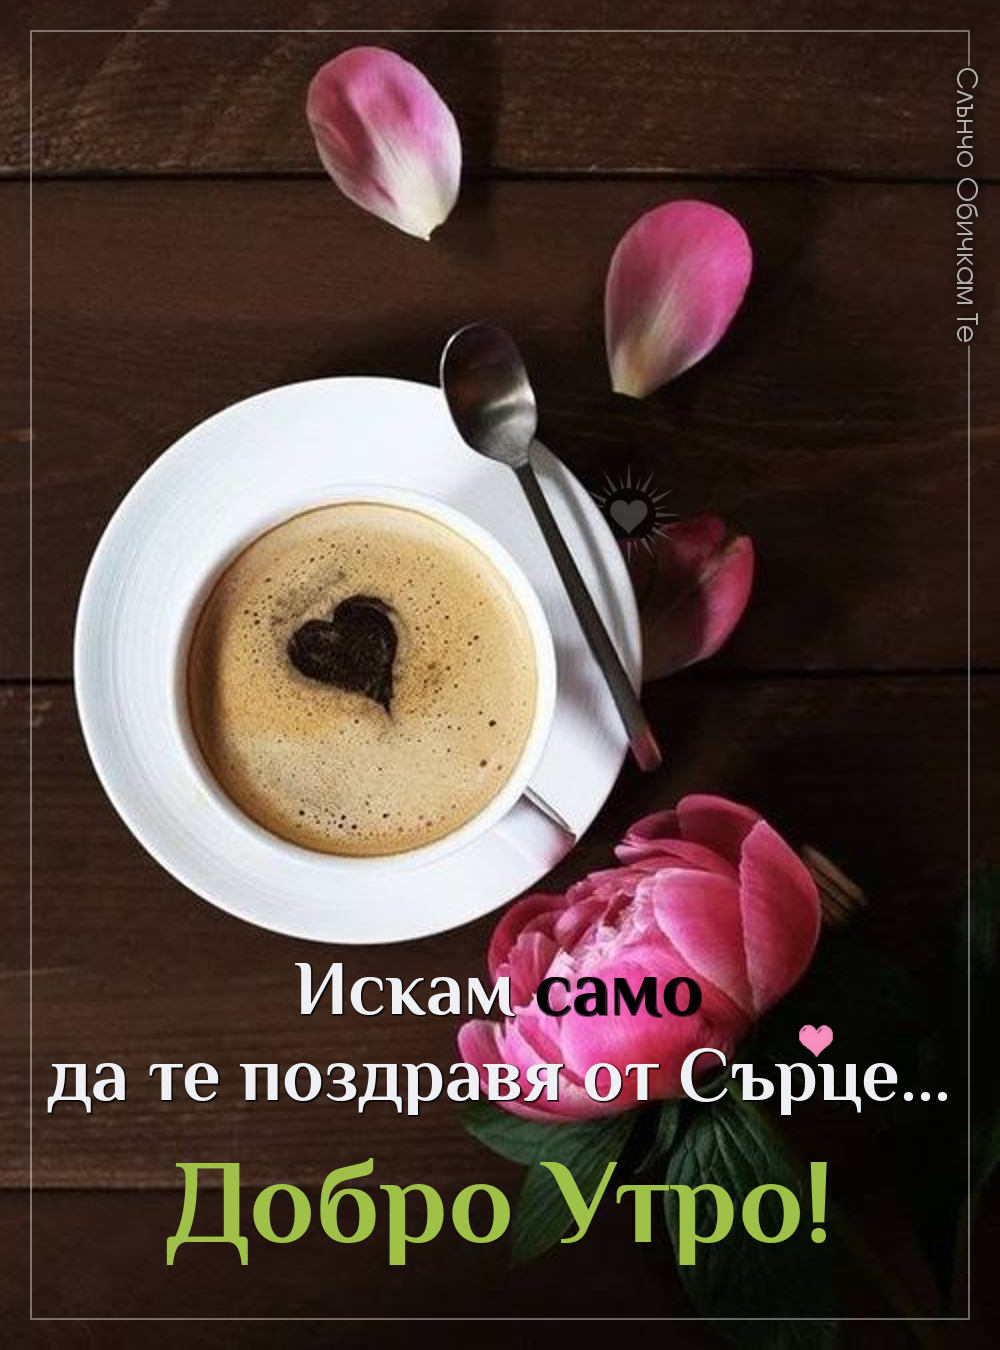 Едно добро утро от сърце, картички за добро утро, добро утро с кафе и цветя, пожелания за добро утро, поздрав от сърце